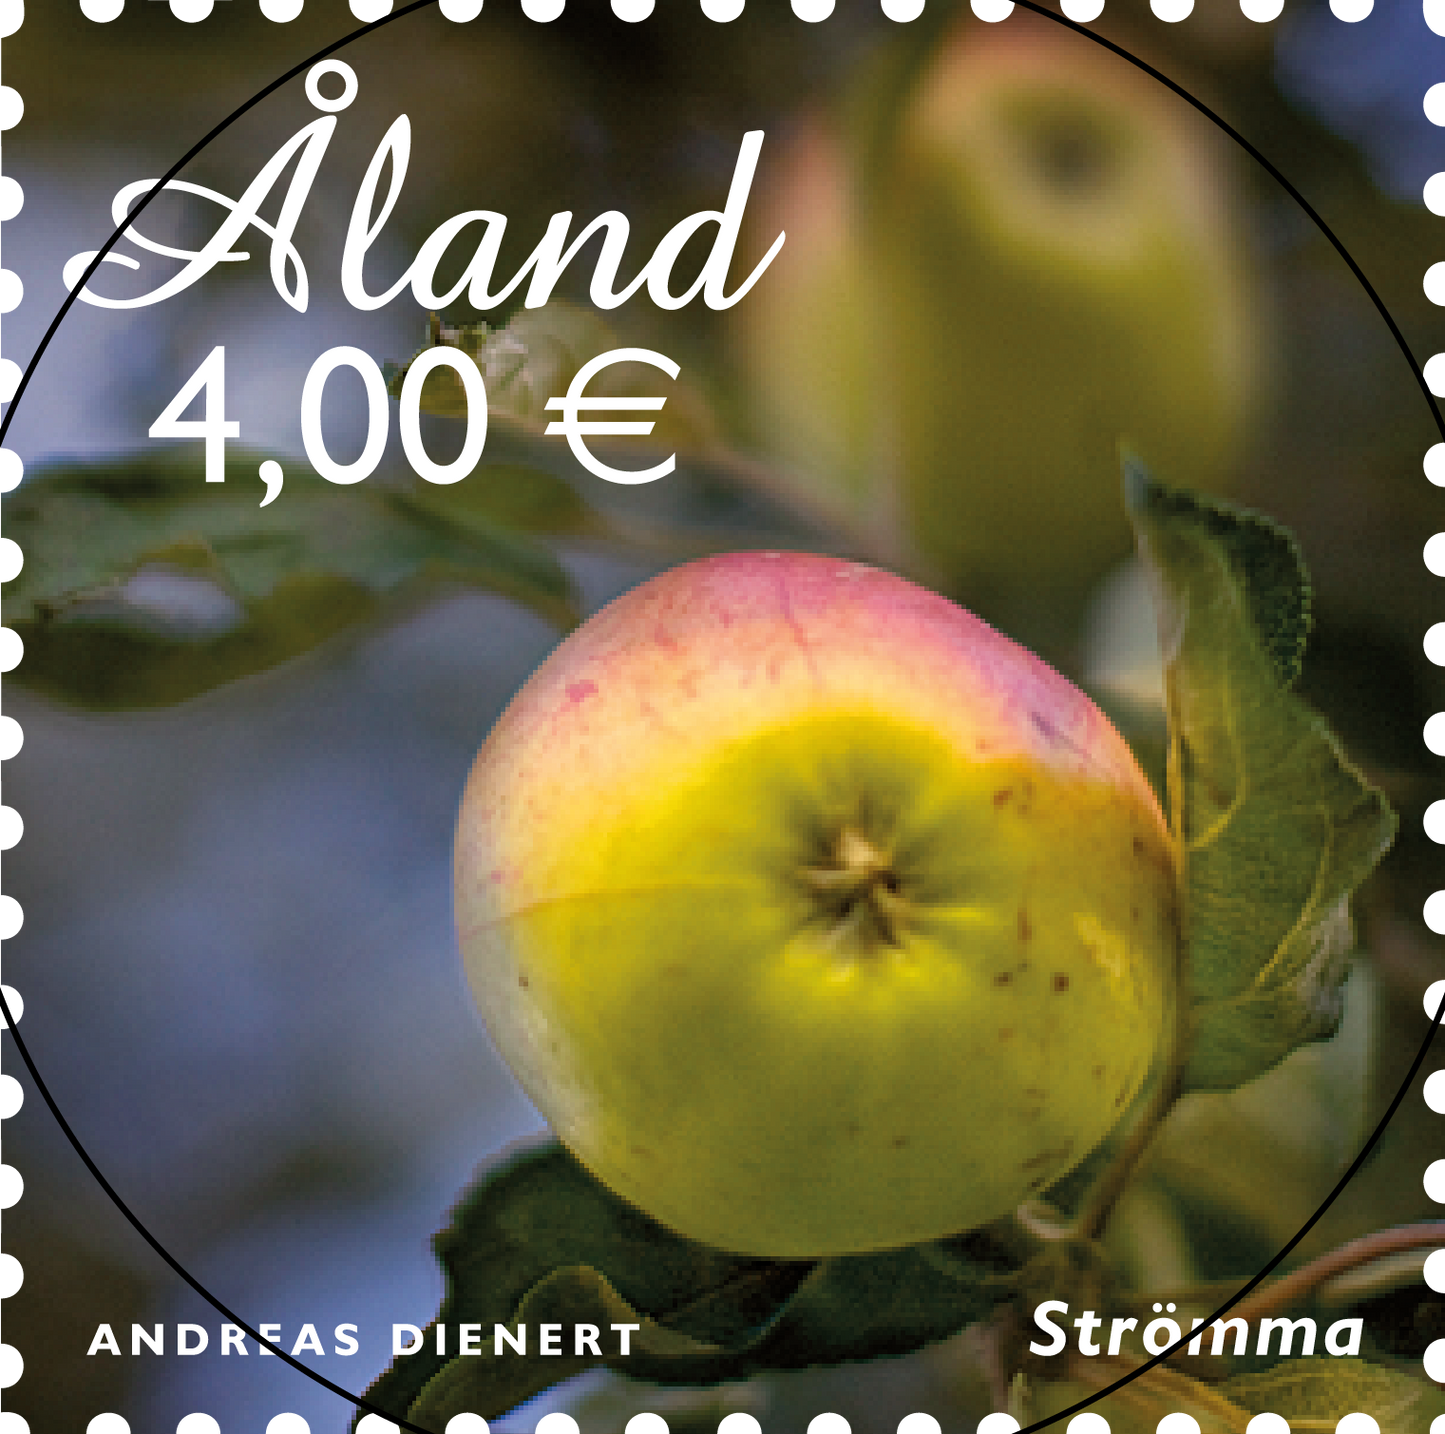 Åländska äpplen 2 - stämplat